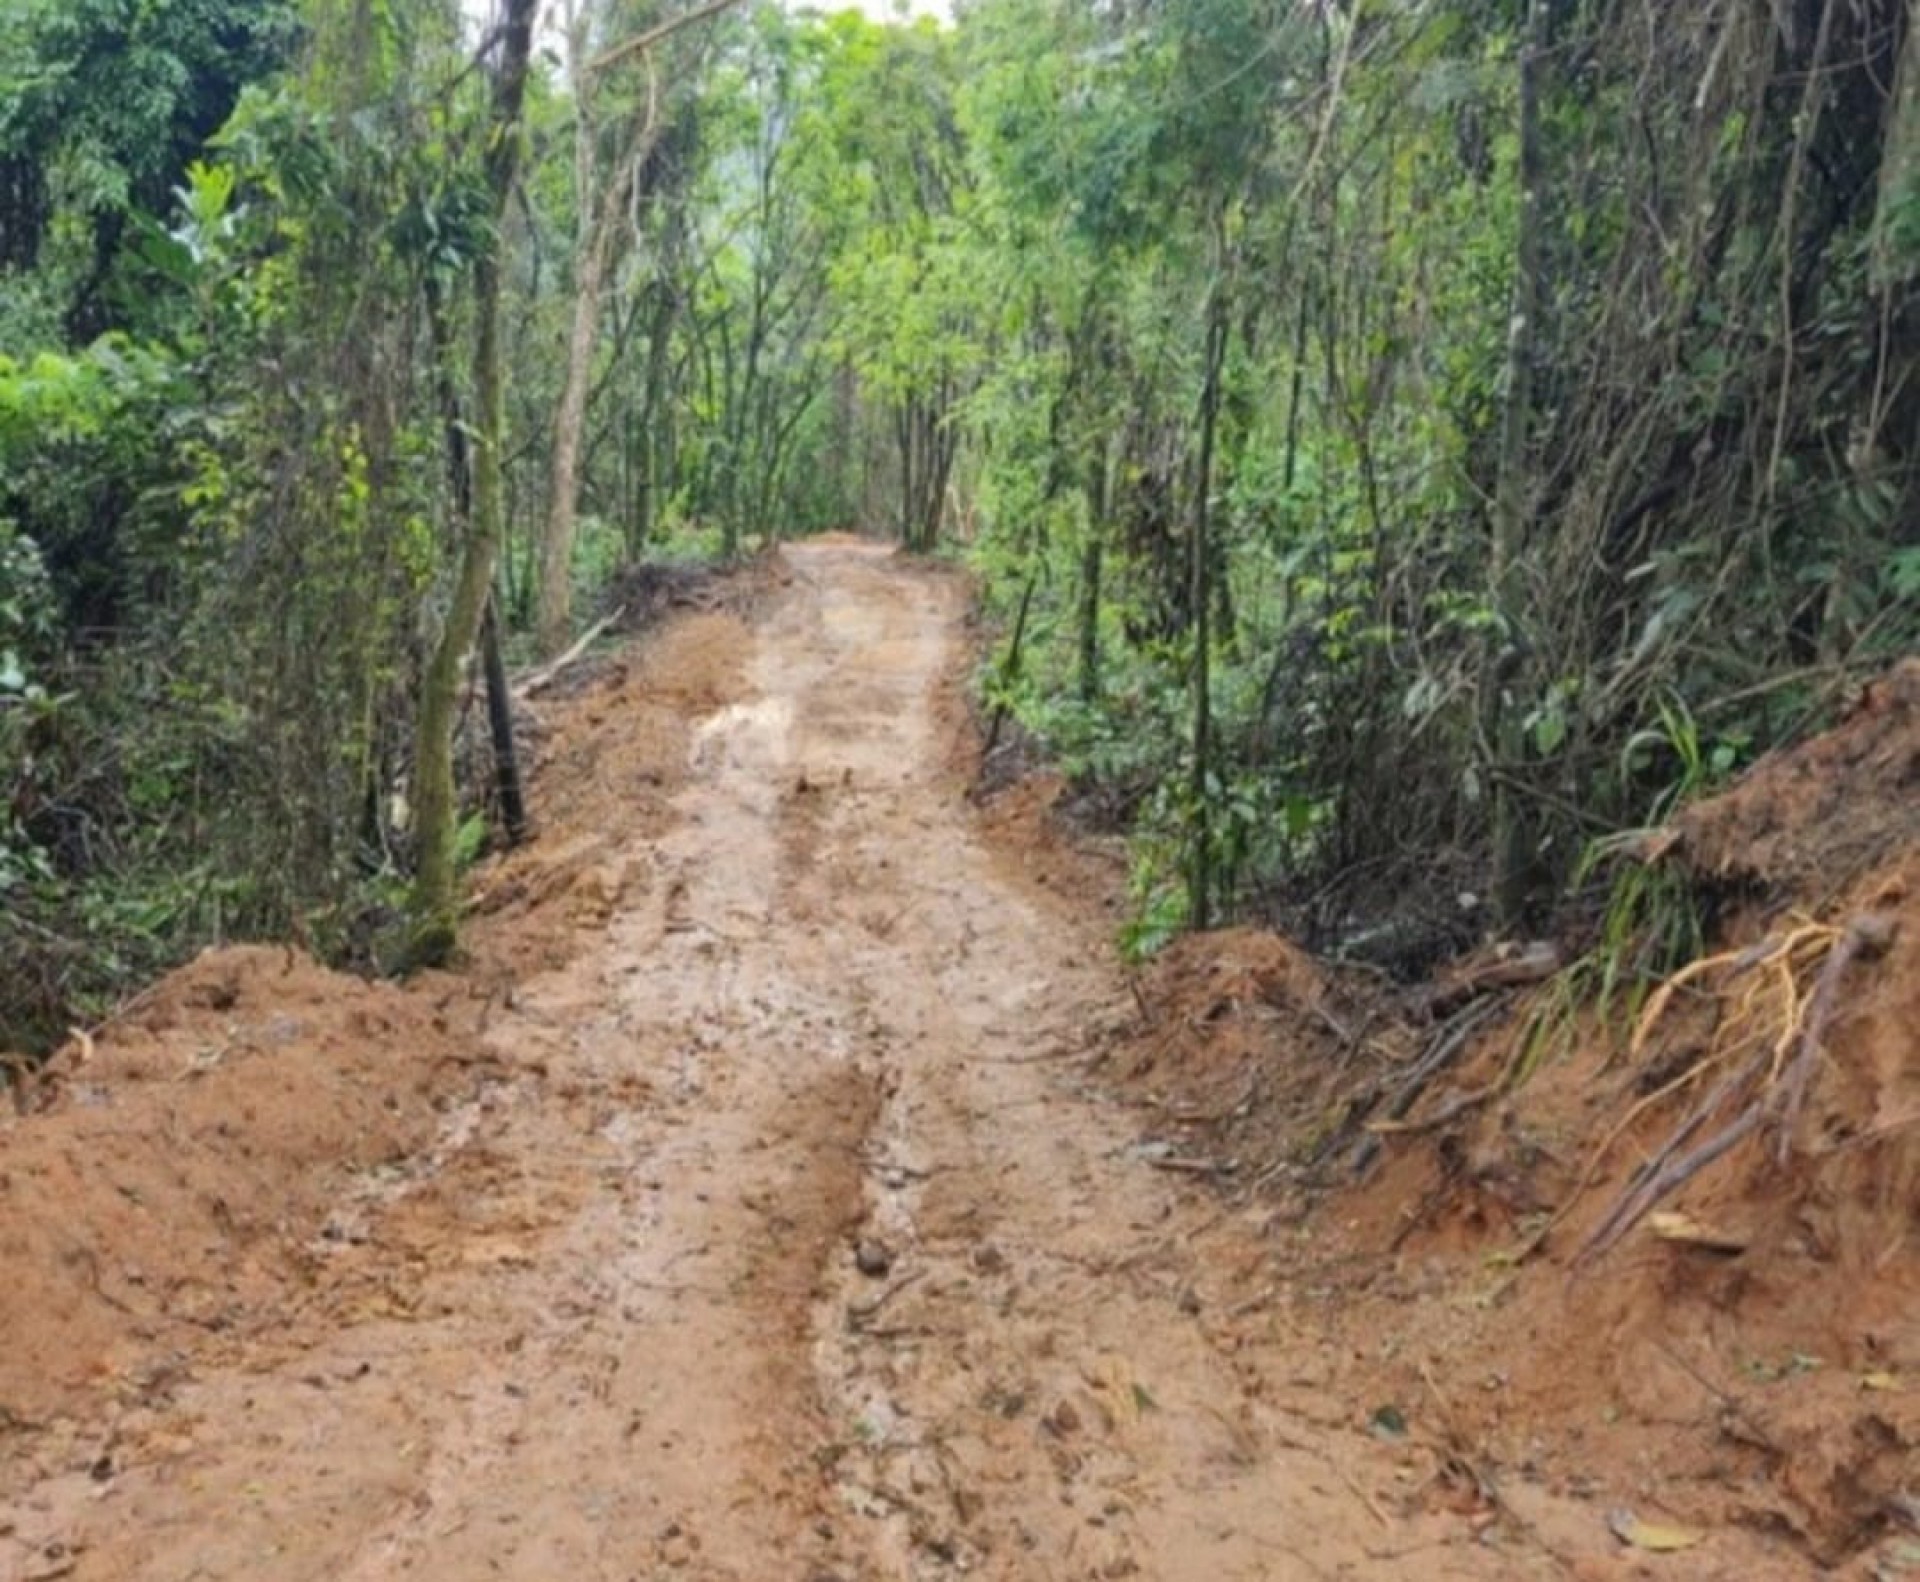 Estrada ilegal atravessa área de preservação em Paraty - Divulgação/Linha Verde